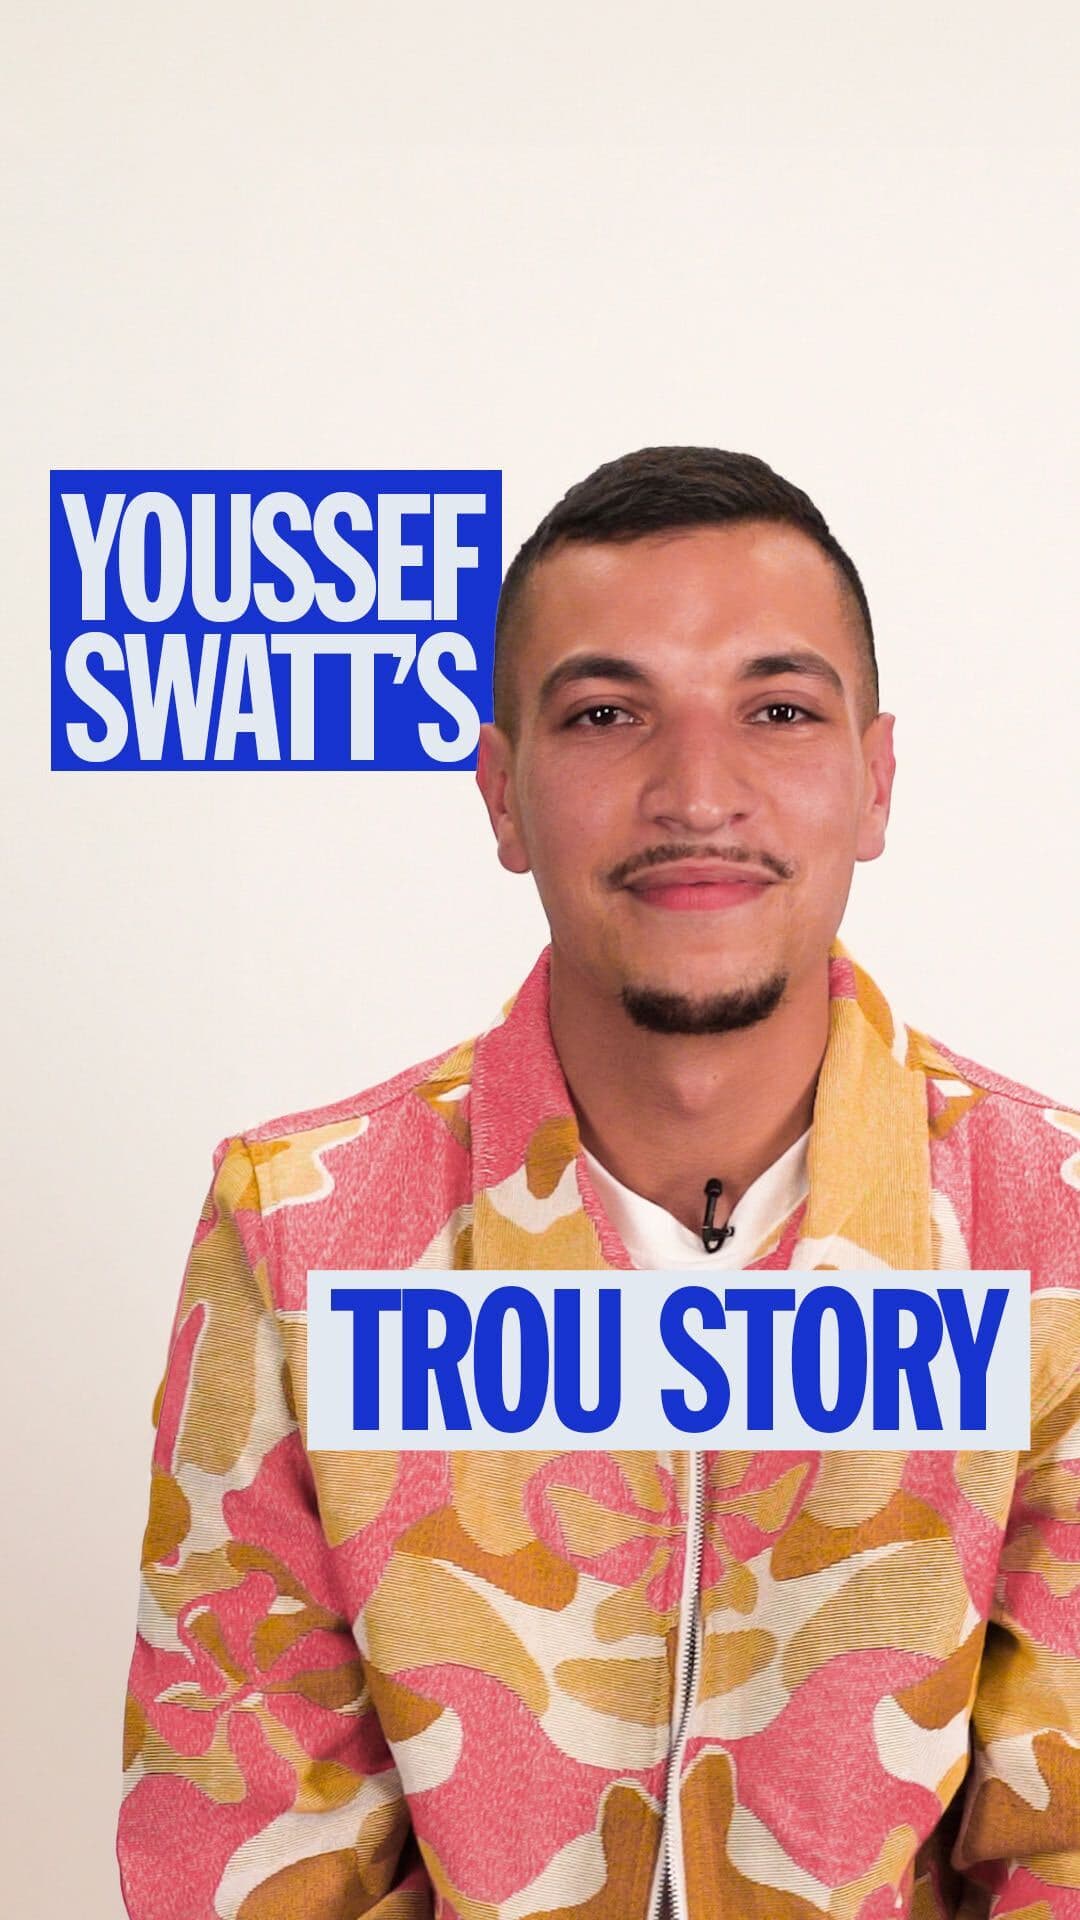 Youssef Swatt’s revient sur son aventure Nouvelle école dans son interview Trou Story